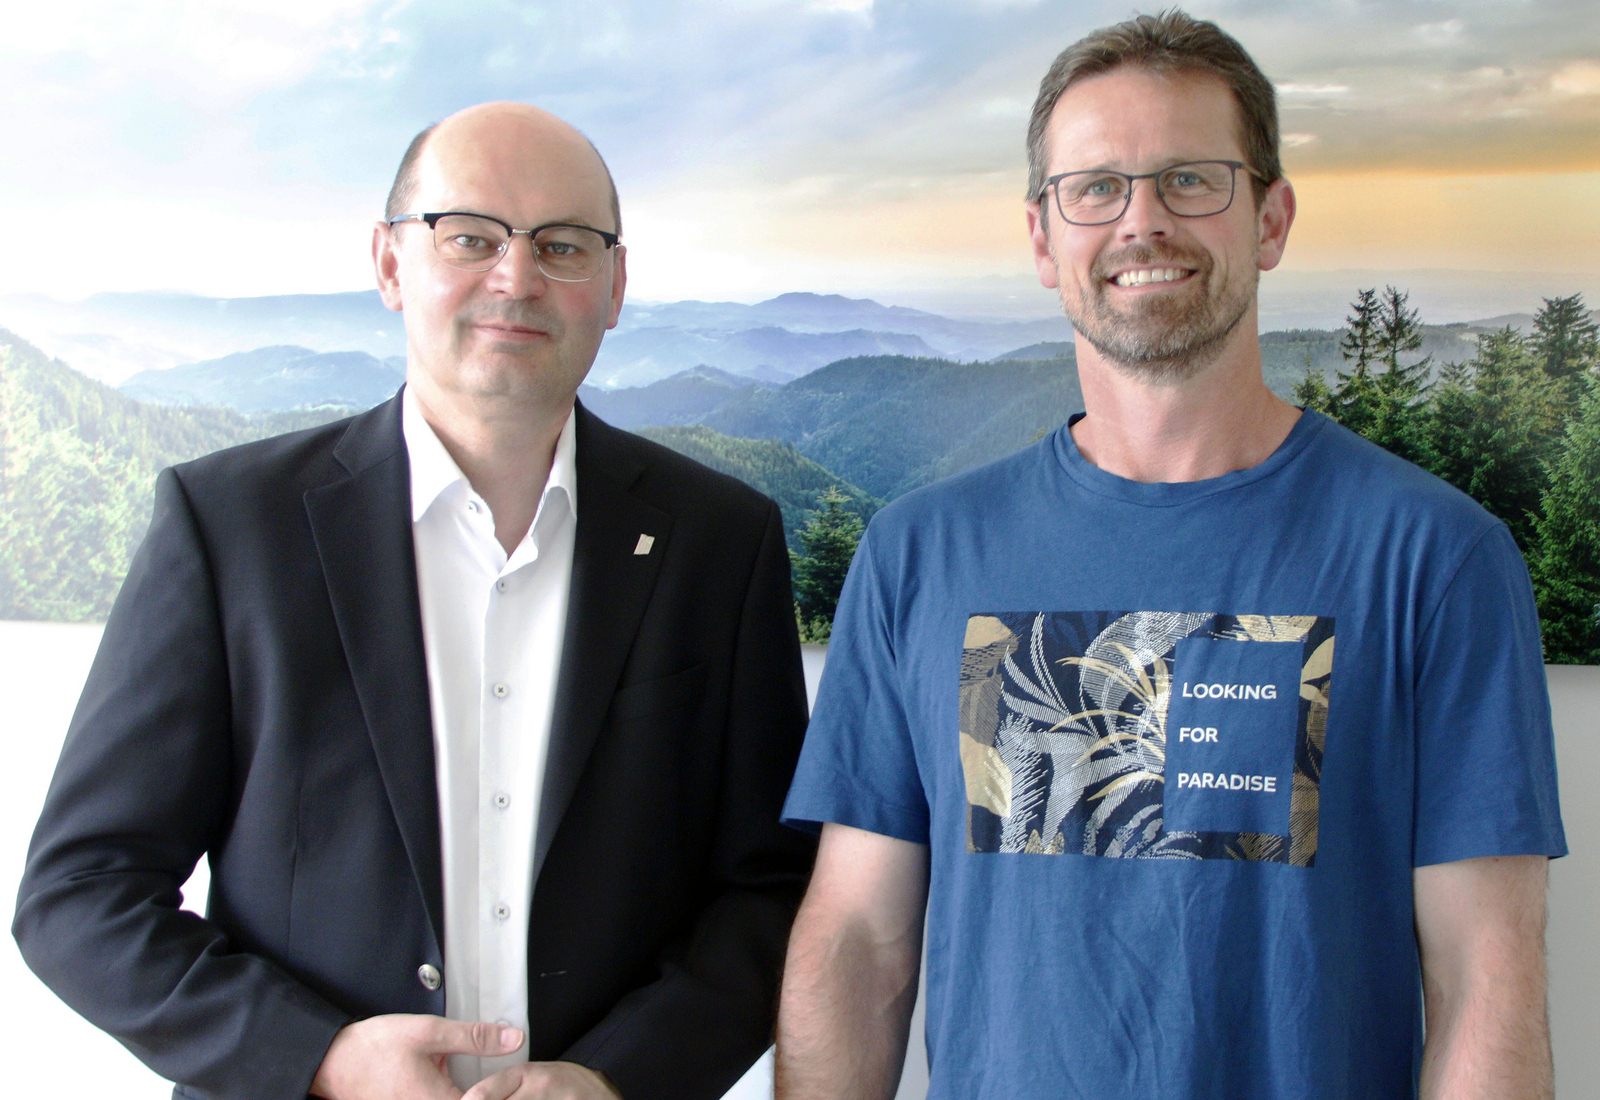 Rektor Prof. Dr. Stephan Trahasch (links) und Christoph Wieland (rechts) vor einem Schwarzwaldbild.